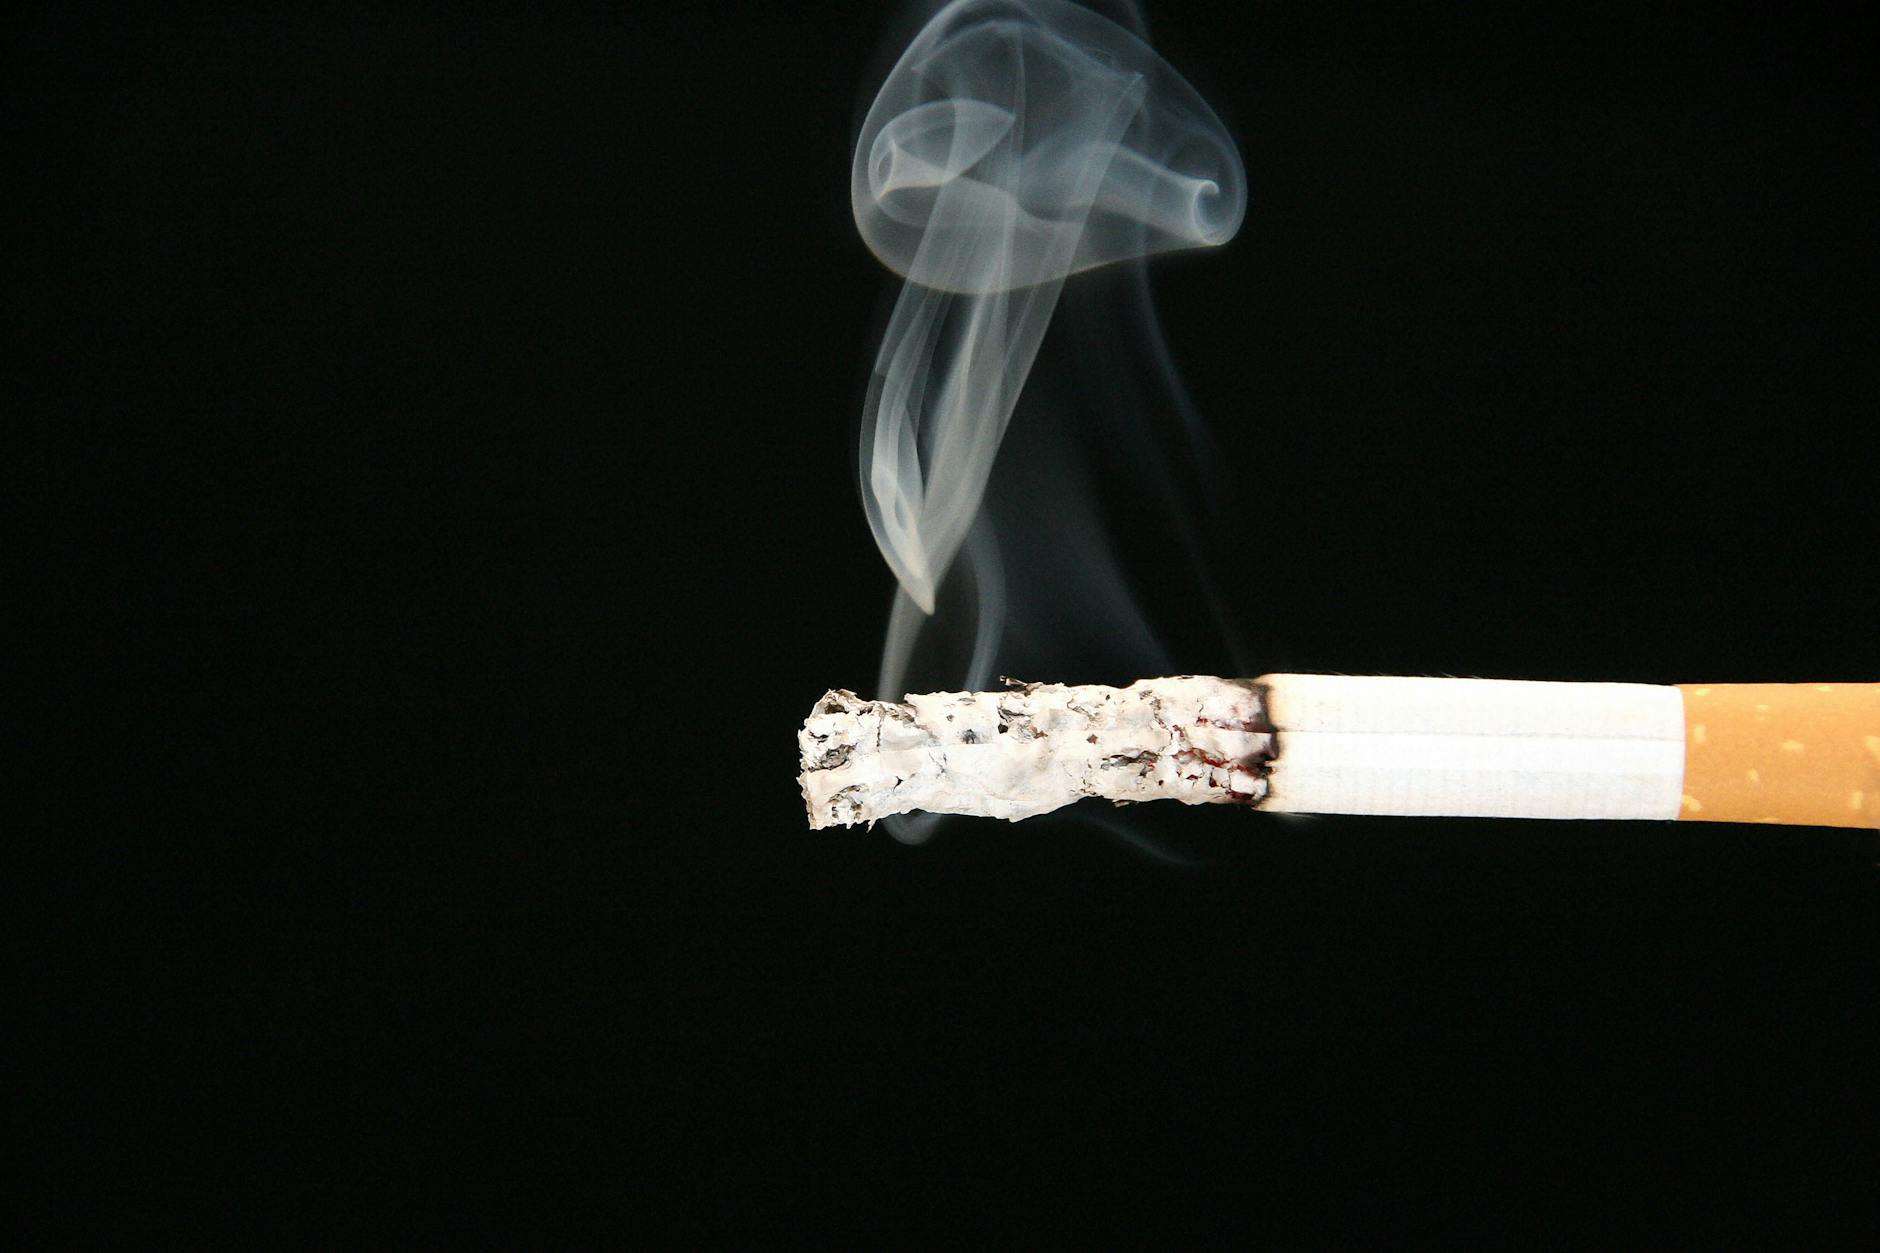 Nach Krebsdiagnose mit Rauchen aufzuhören, kann Leben verlängern